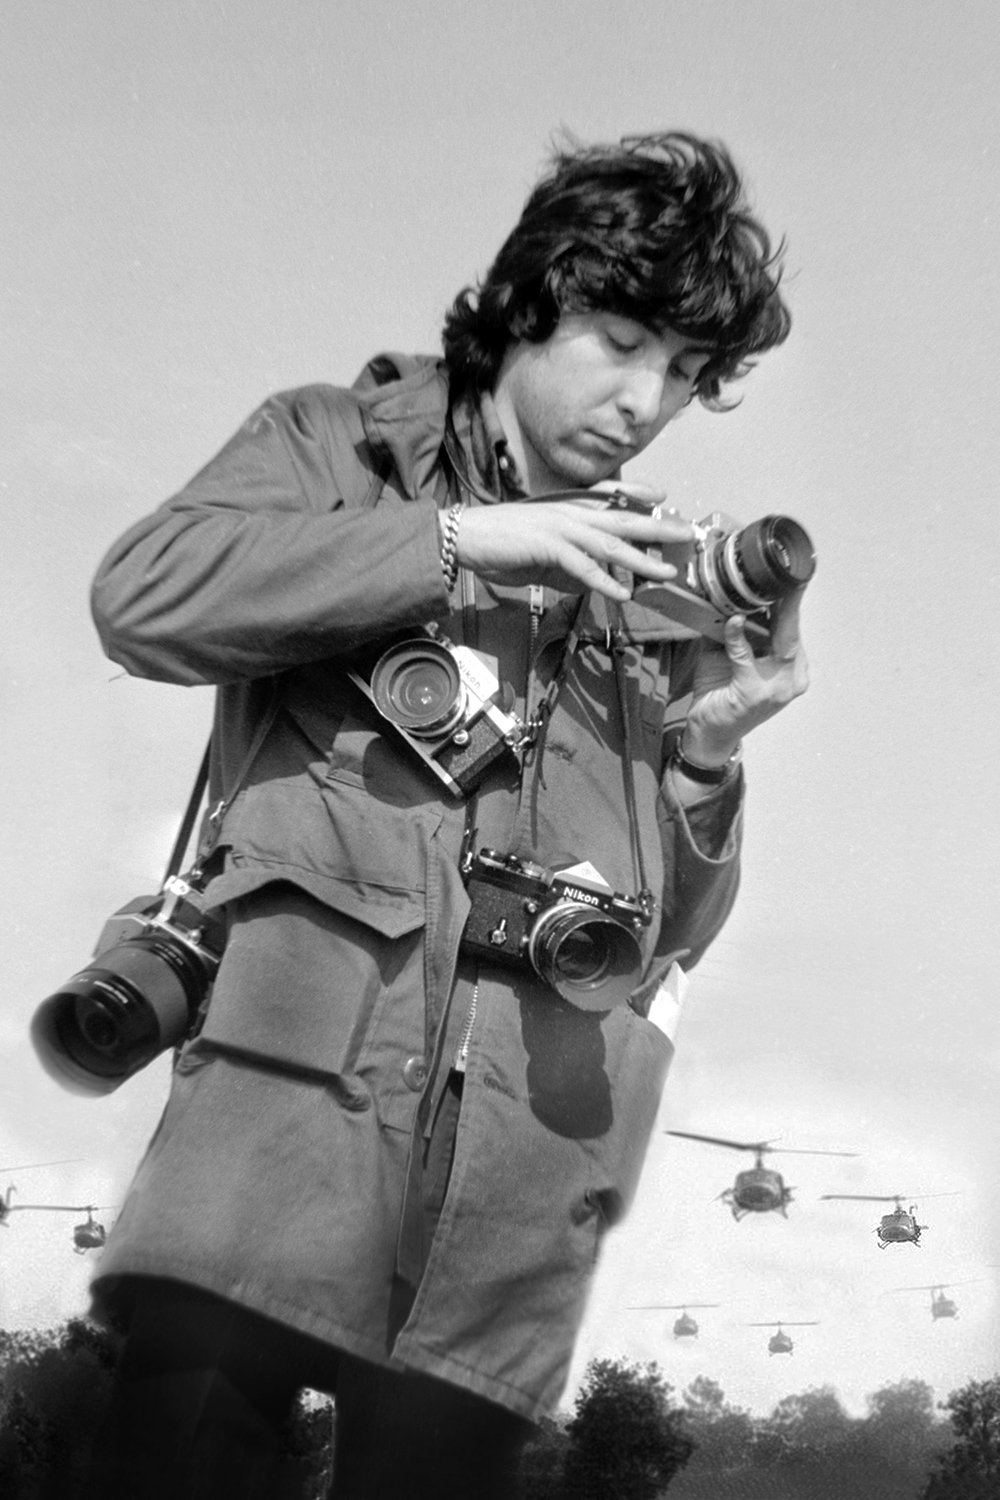 Pierre Toutain-Dorbec in Vietnam, 1970s